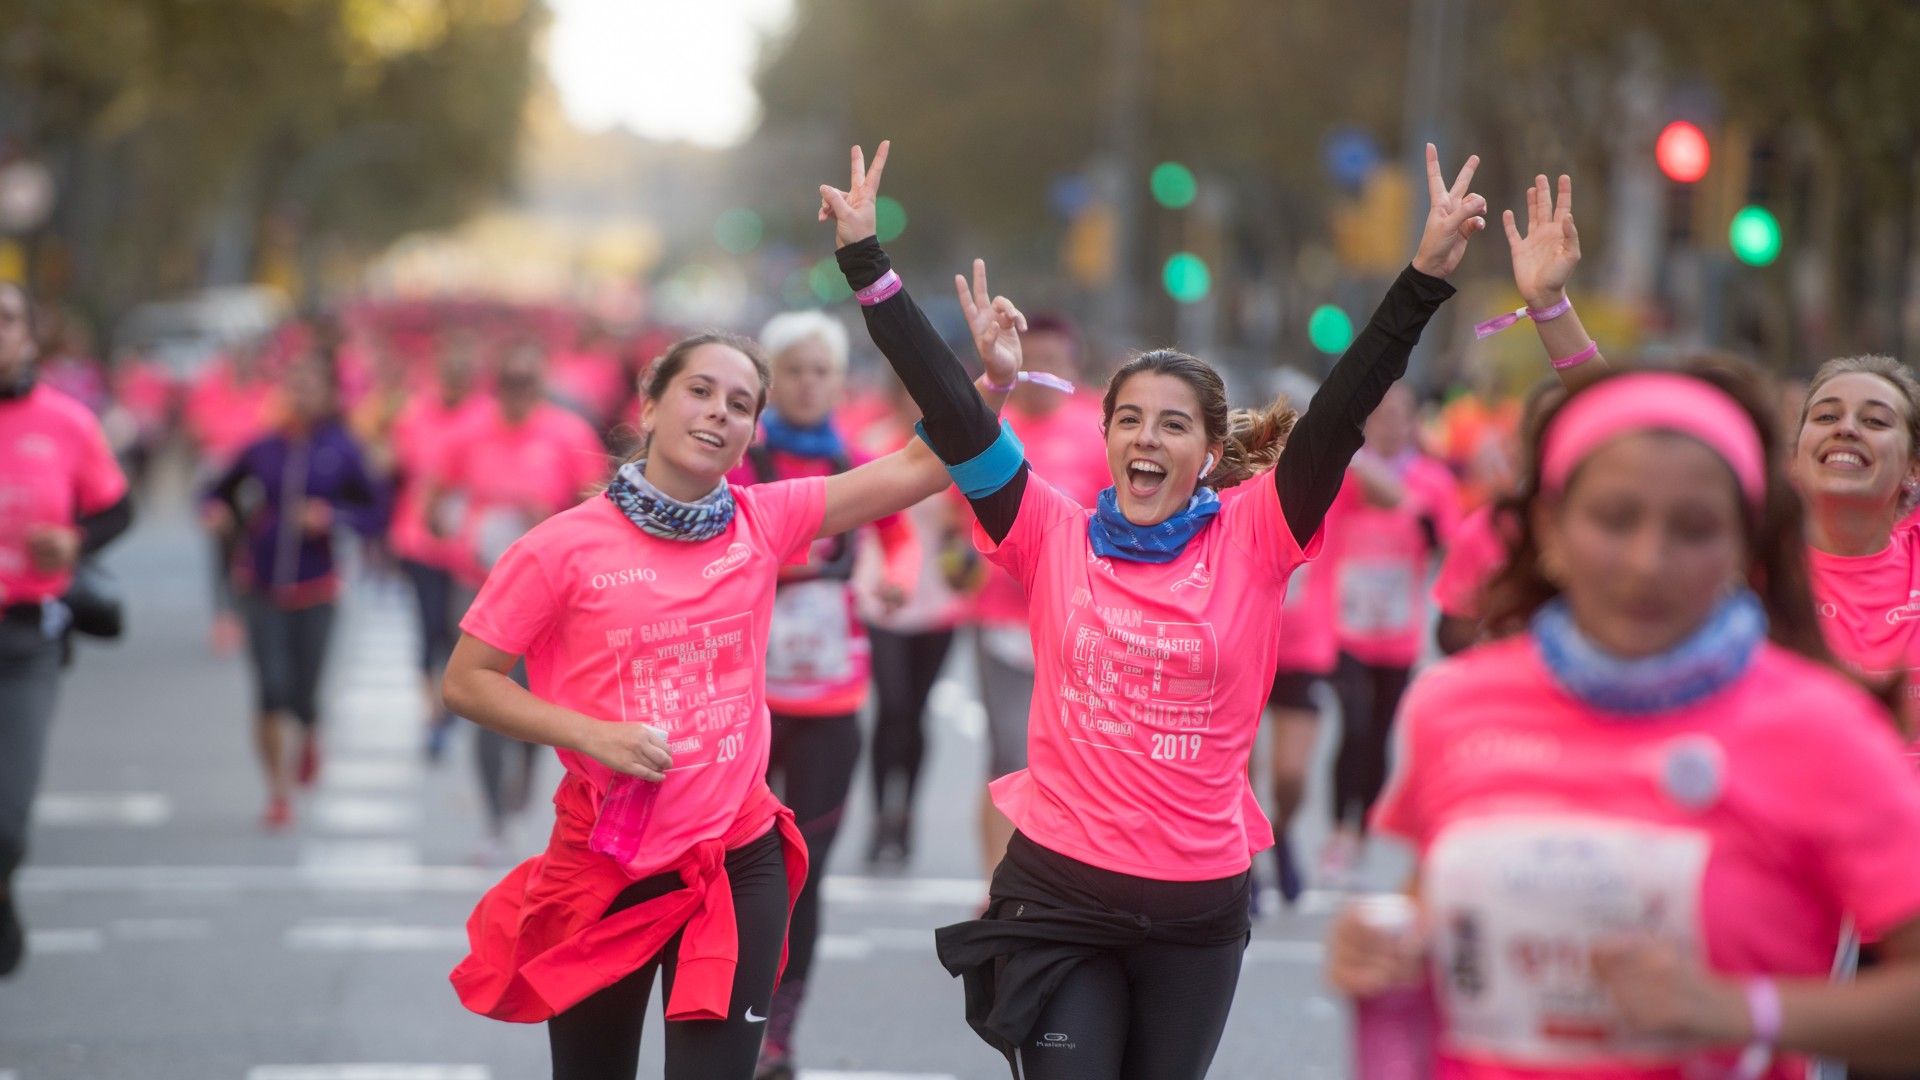 Cursa de la Mujer 2019 en Barcelona